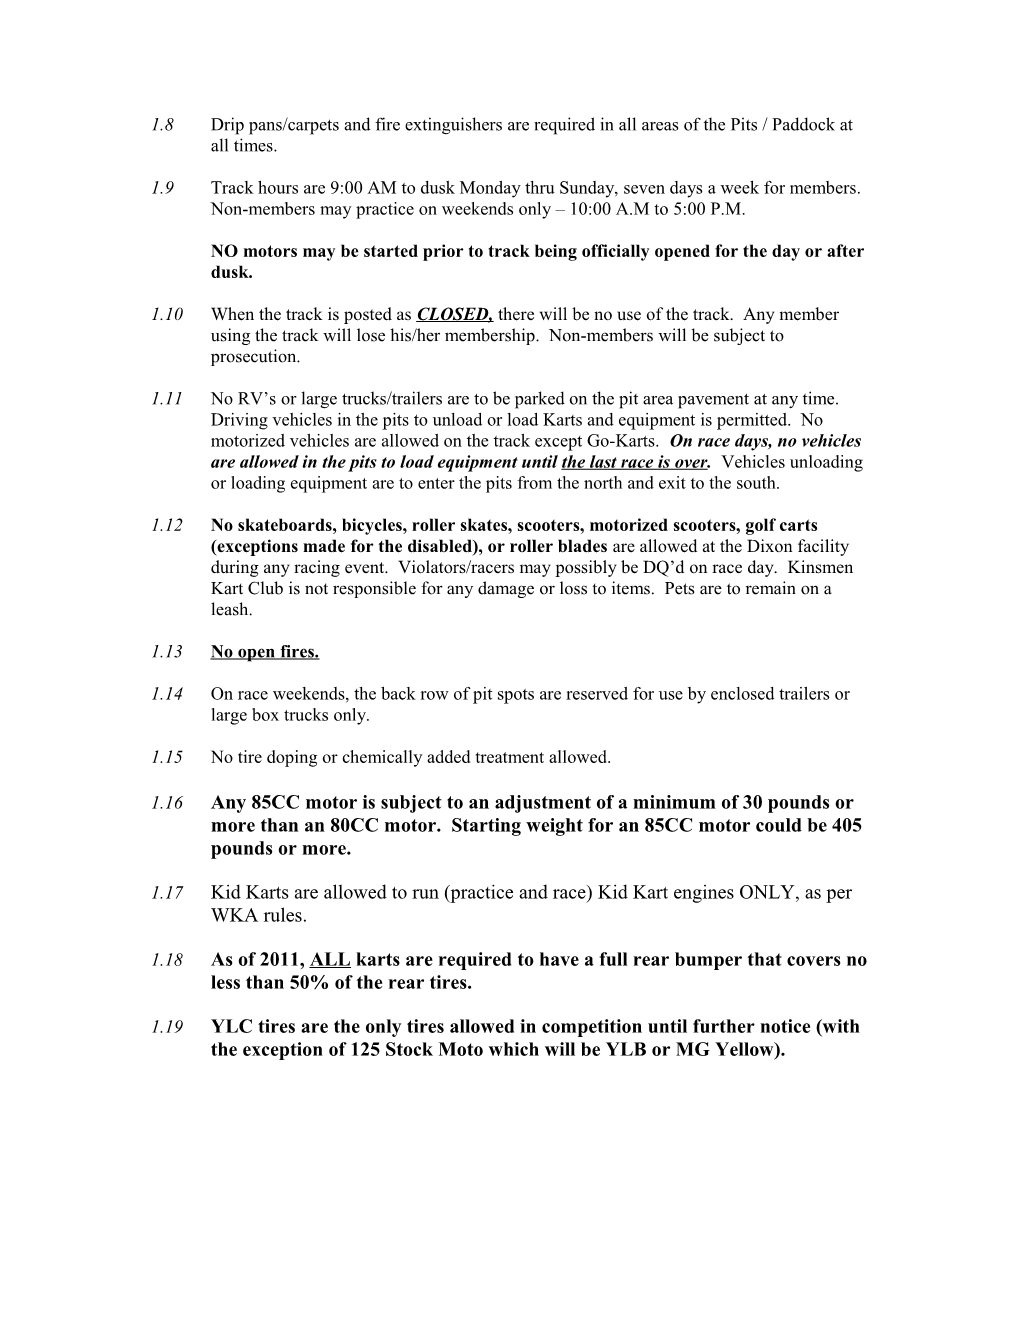 2006 Kinsmen Kart Club Supplemental Rules Revised 12-11-2005